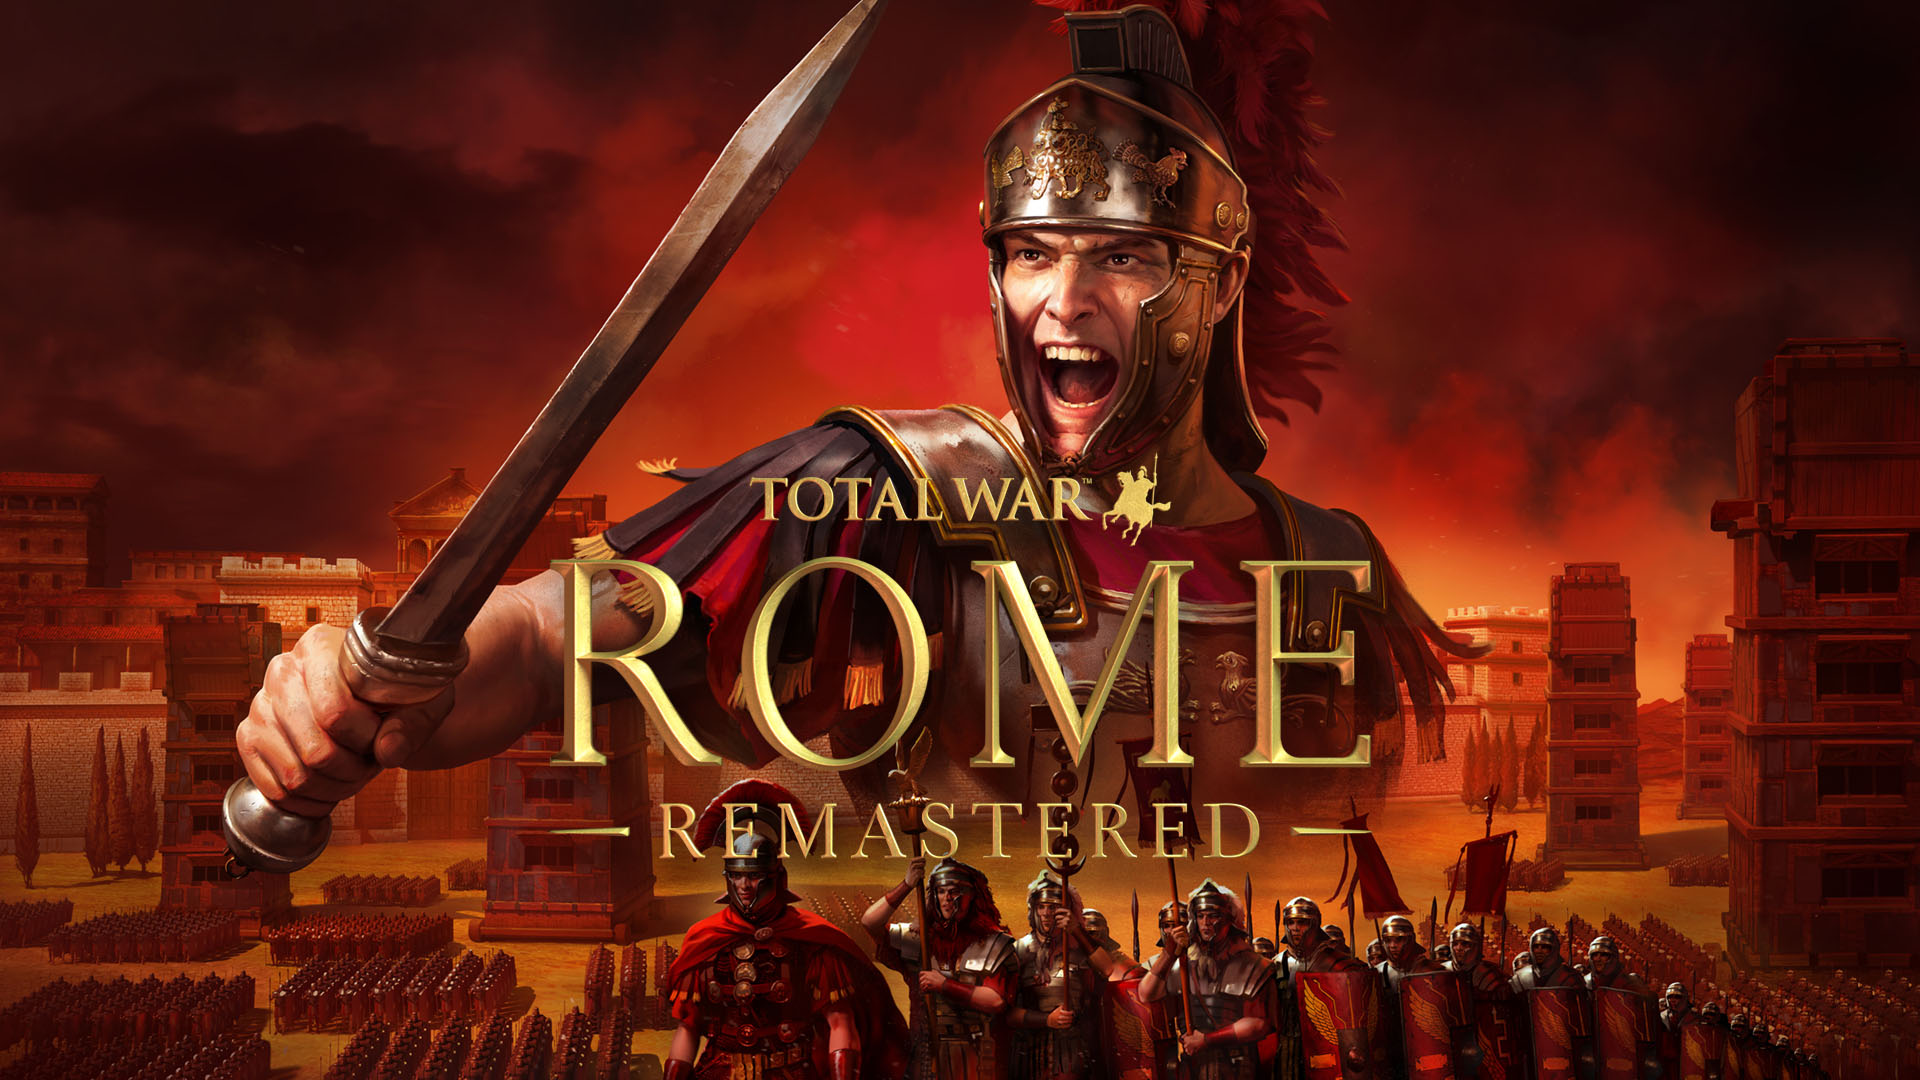 《全軍破敵：羅馬》重製版IGN 7分：現代化後對老玩家不友好